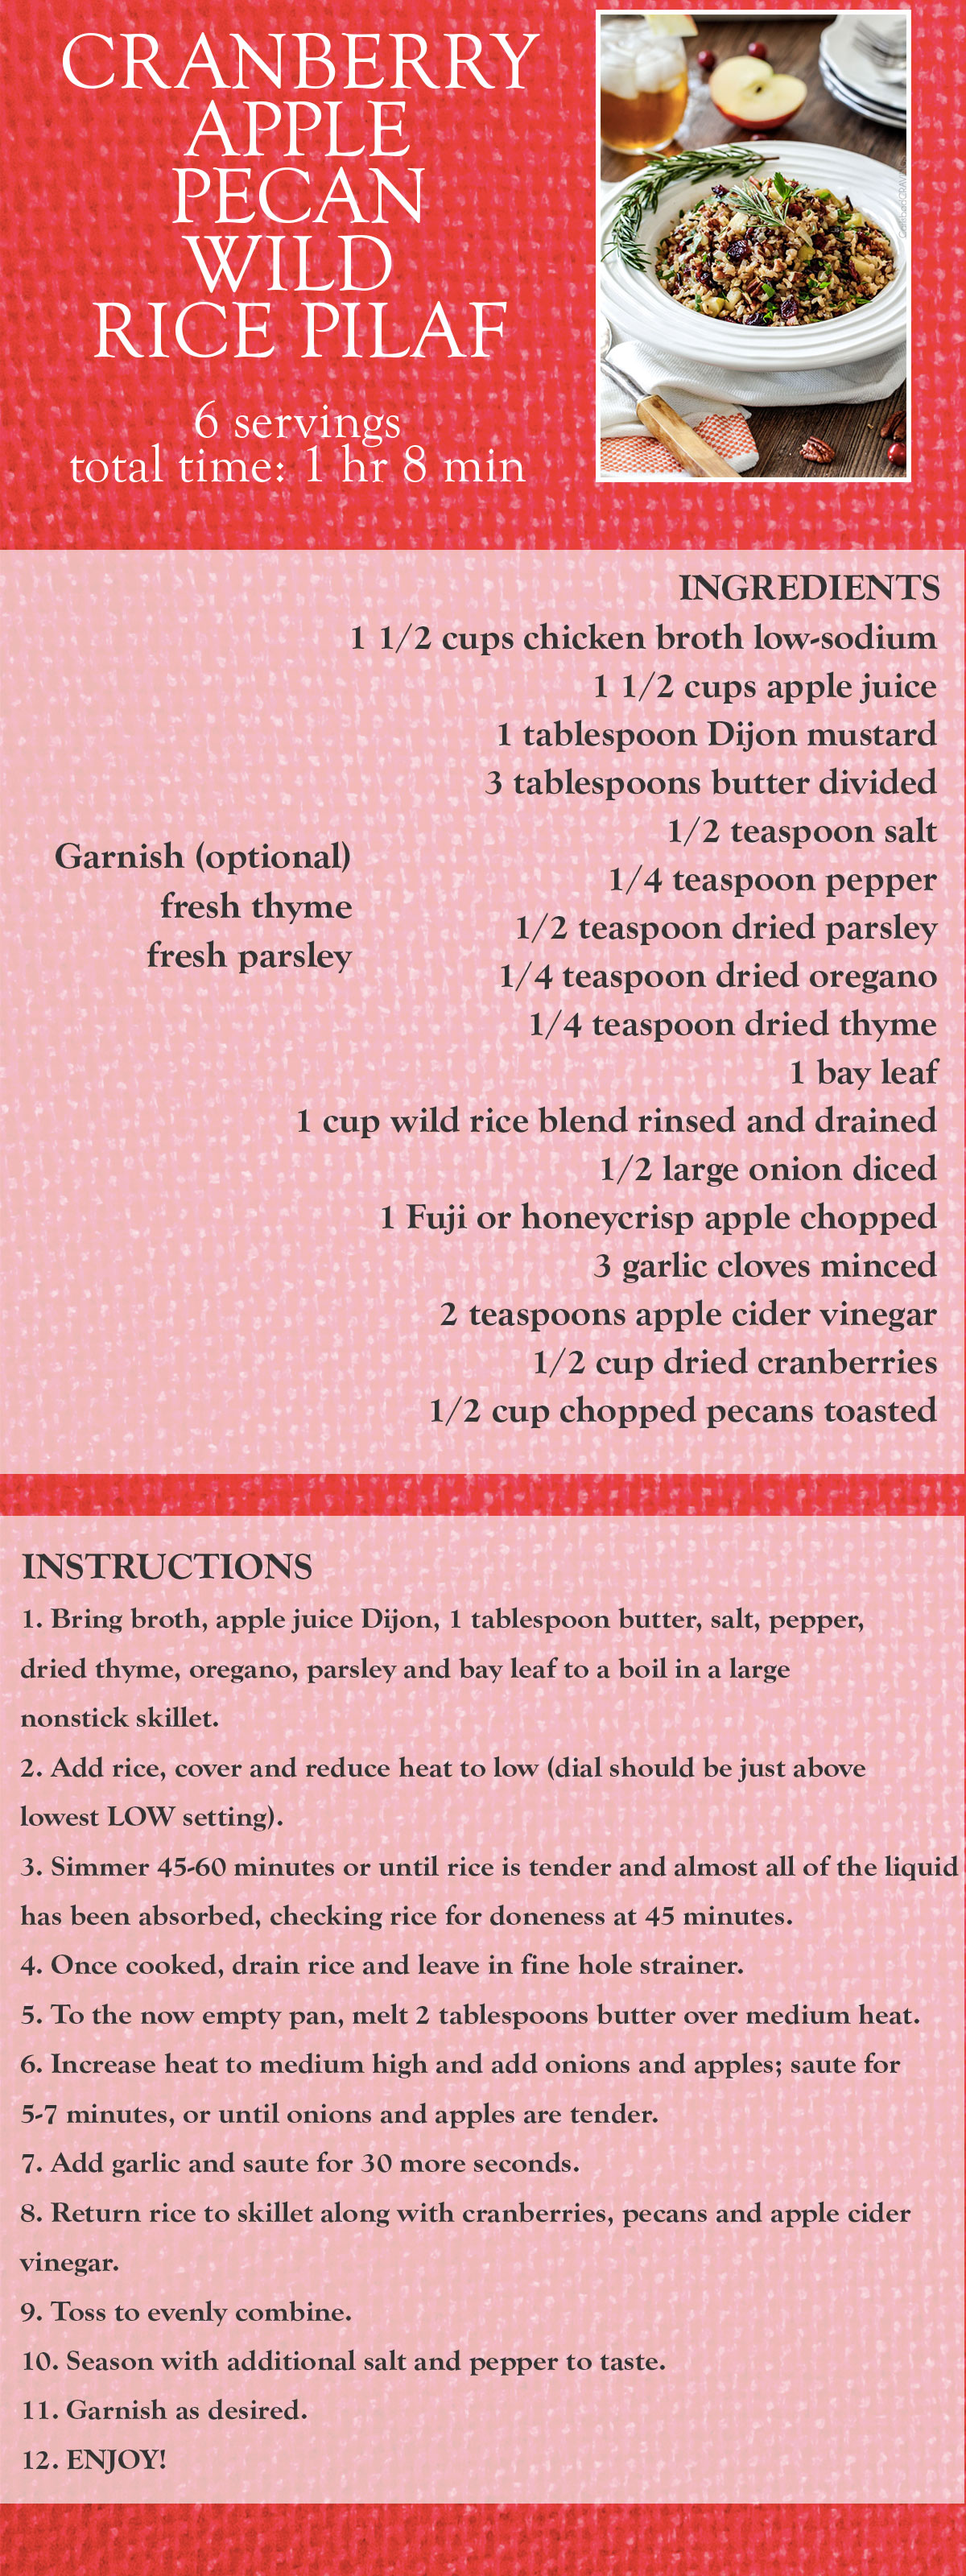 Cranberry Apple Pecan Wild Rice Pilaf Recipe Card